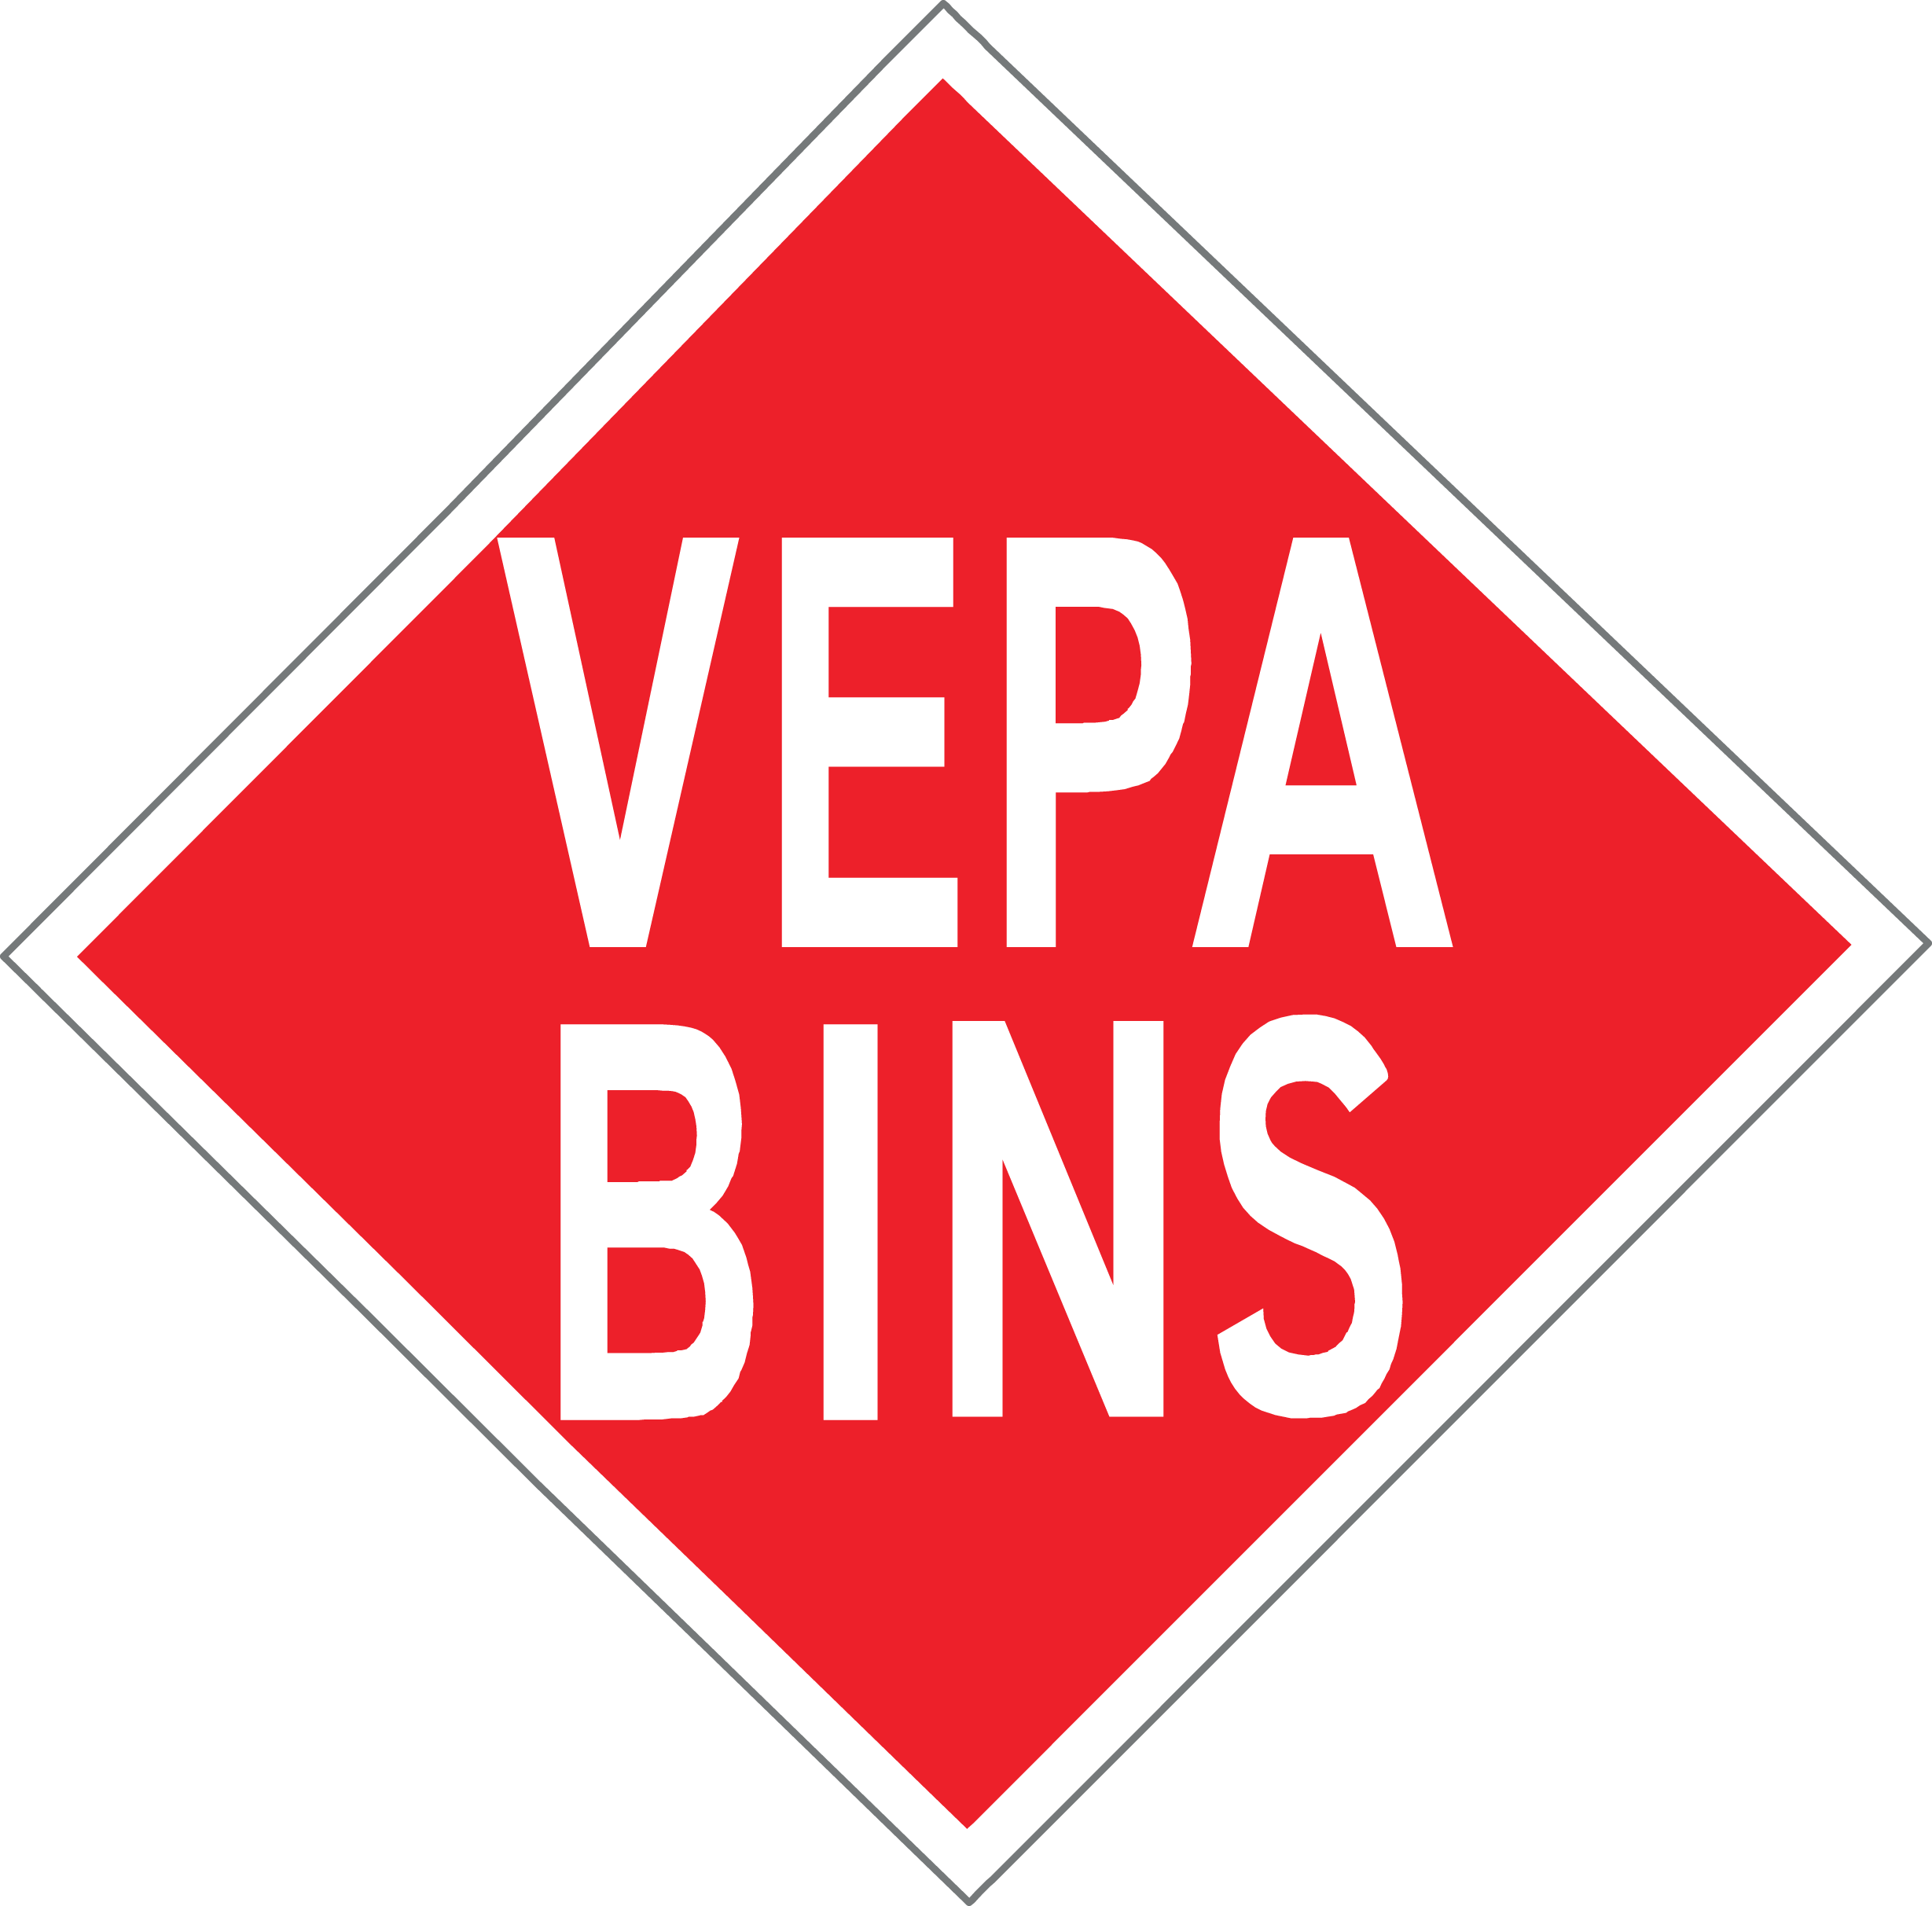 Vepa bins - preferred dealer in de BeneLux voor BICA